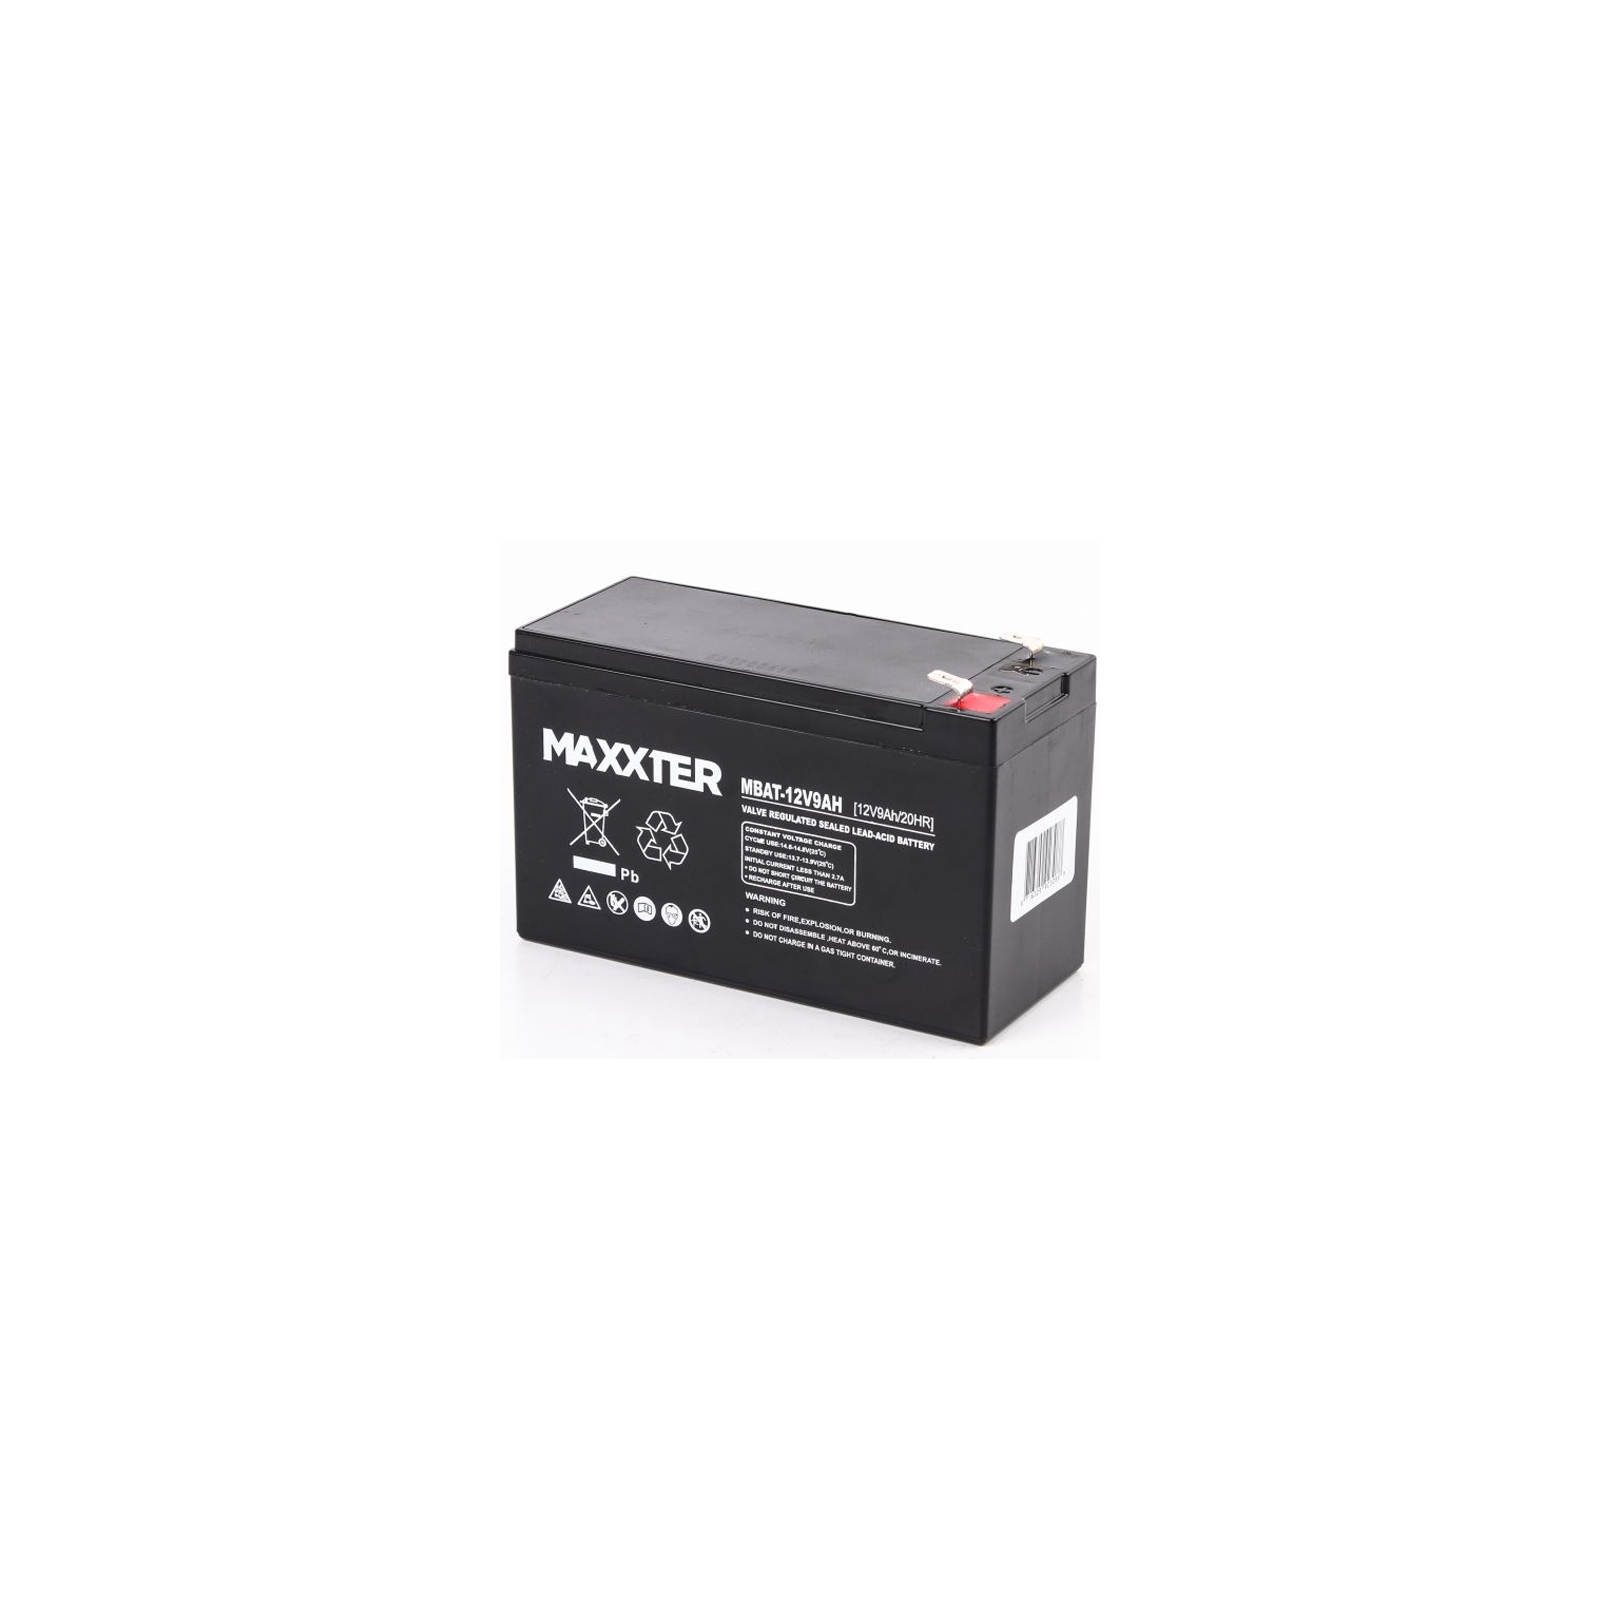 Батарея к ИБП Maxxter 12V 9AH (MBAT-12V9AH)